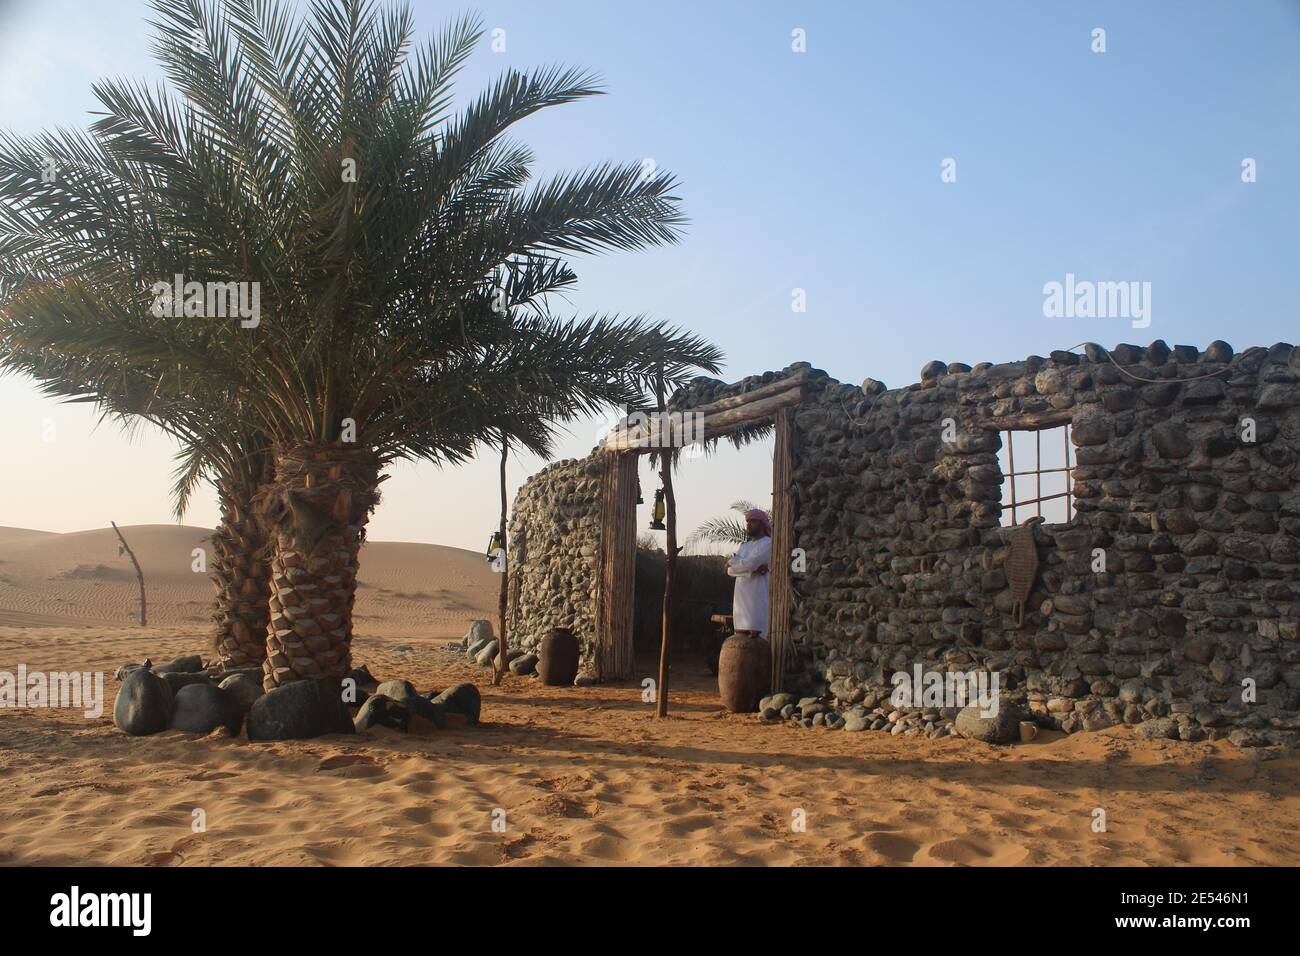 ROTE DÜNEN, VEREINIGTE ARABISCHE EMIRATE - 09. Nov 2019: Beduinenkamp in Dubai Vereinigte Arabische Emirate in der Wüste. Stockfoto